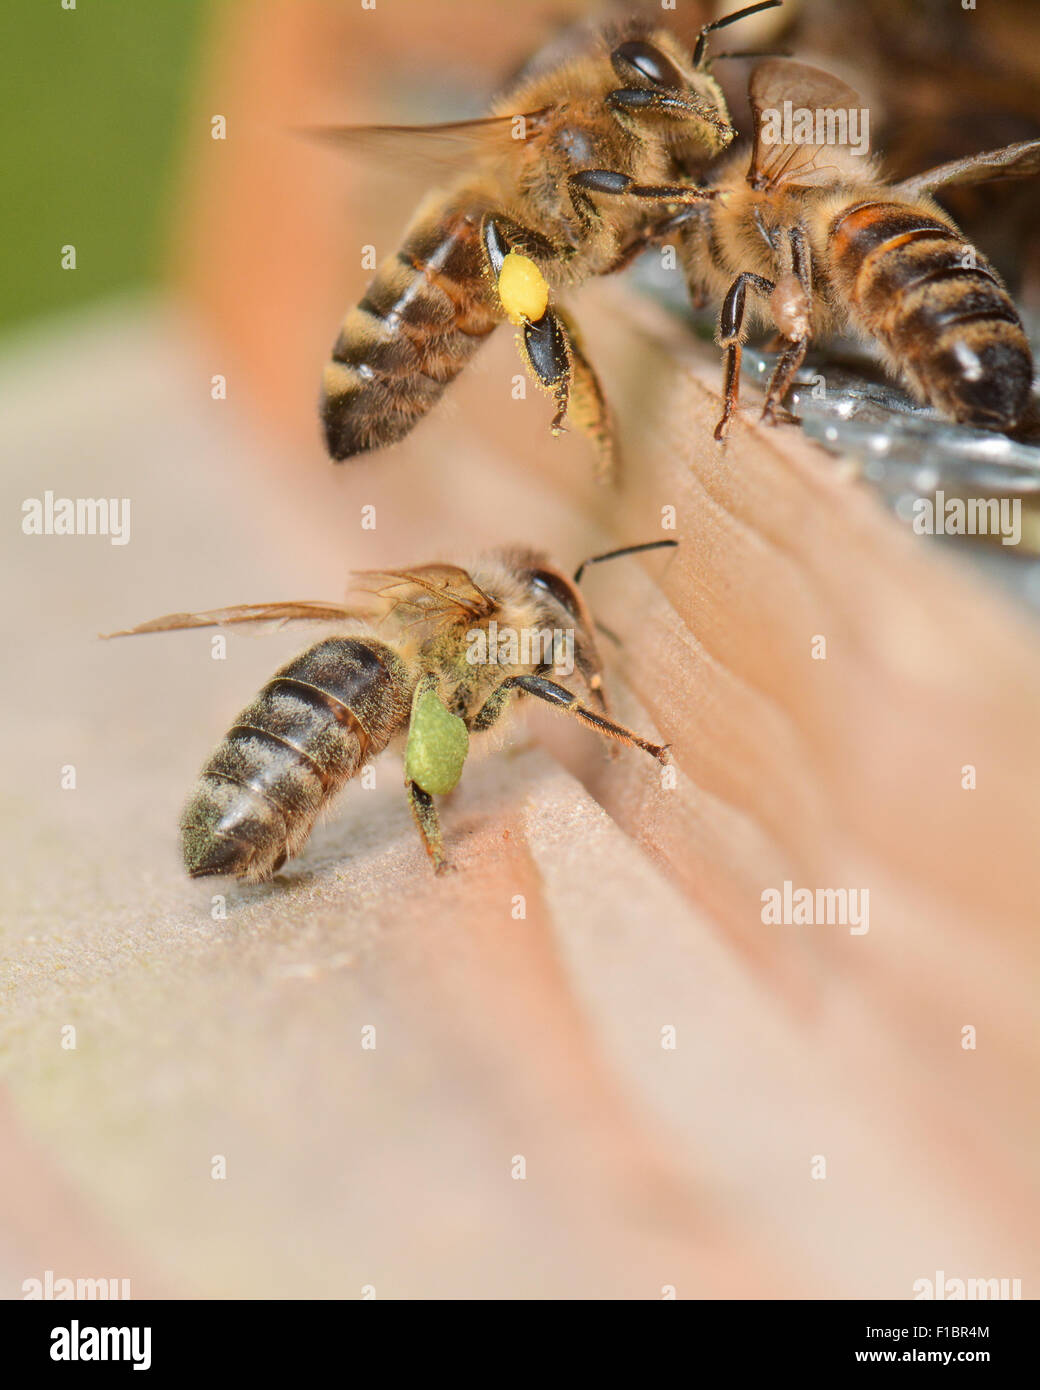 Les abeilles revenant à la ruche avec différents couleurs de pollen sur leurs pattes - Couleur du pollen varie selon les espèces de fleurs Banque D'Images